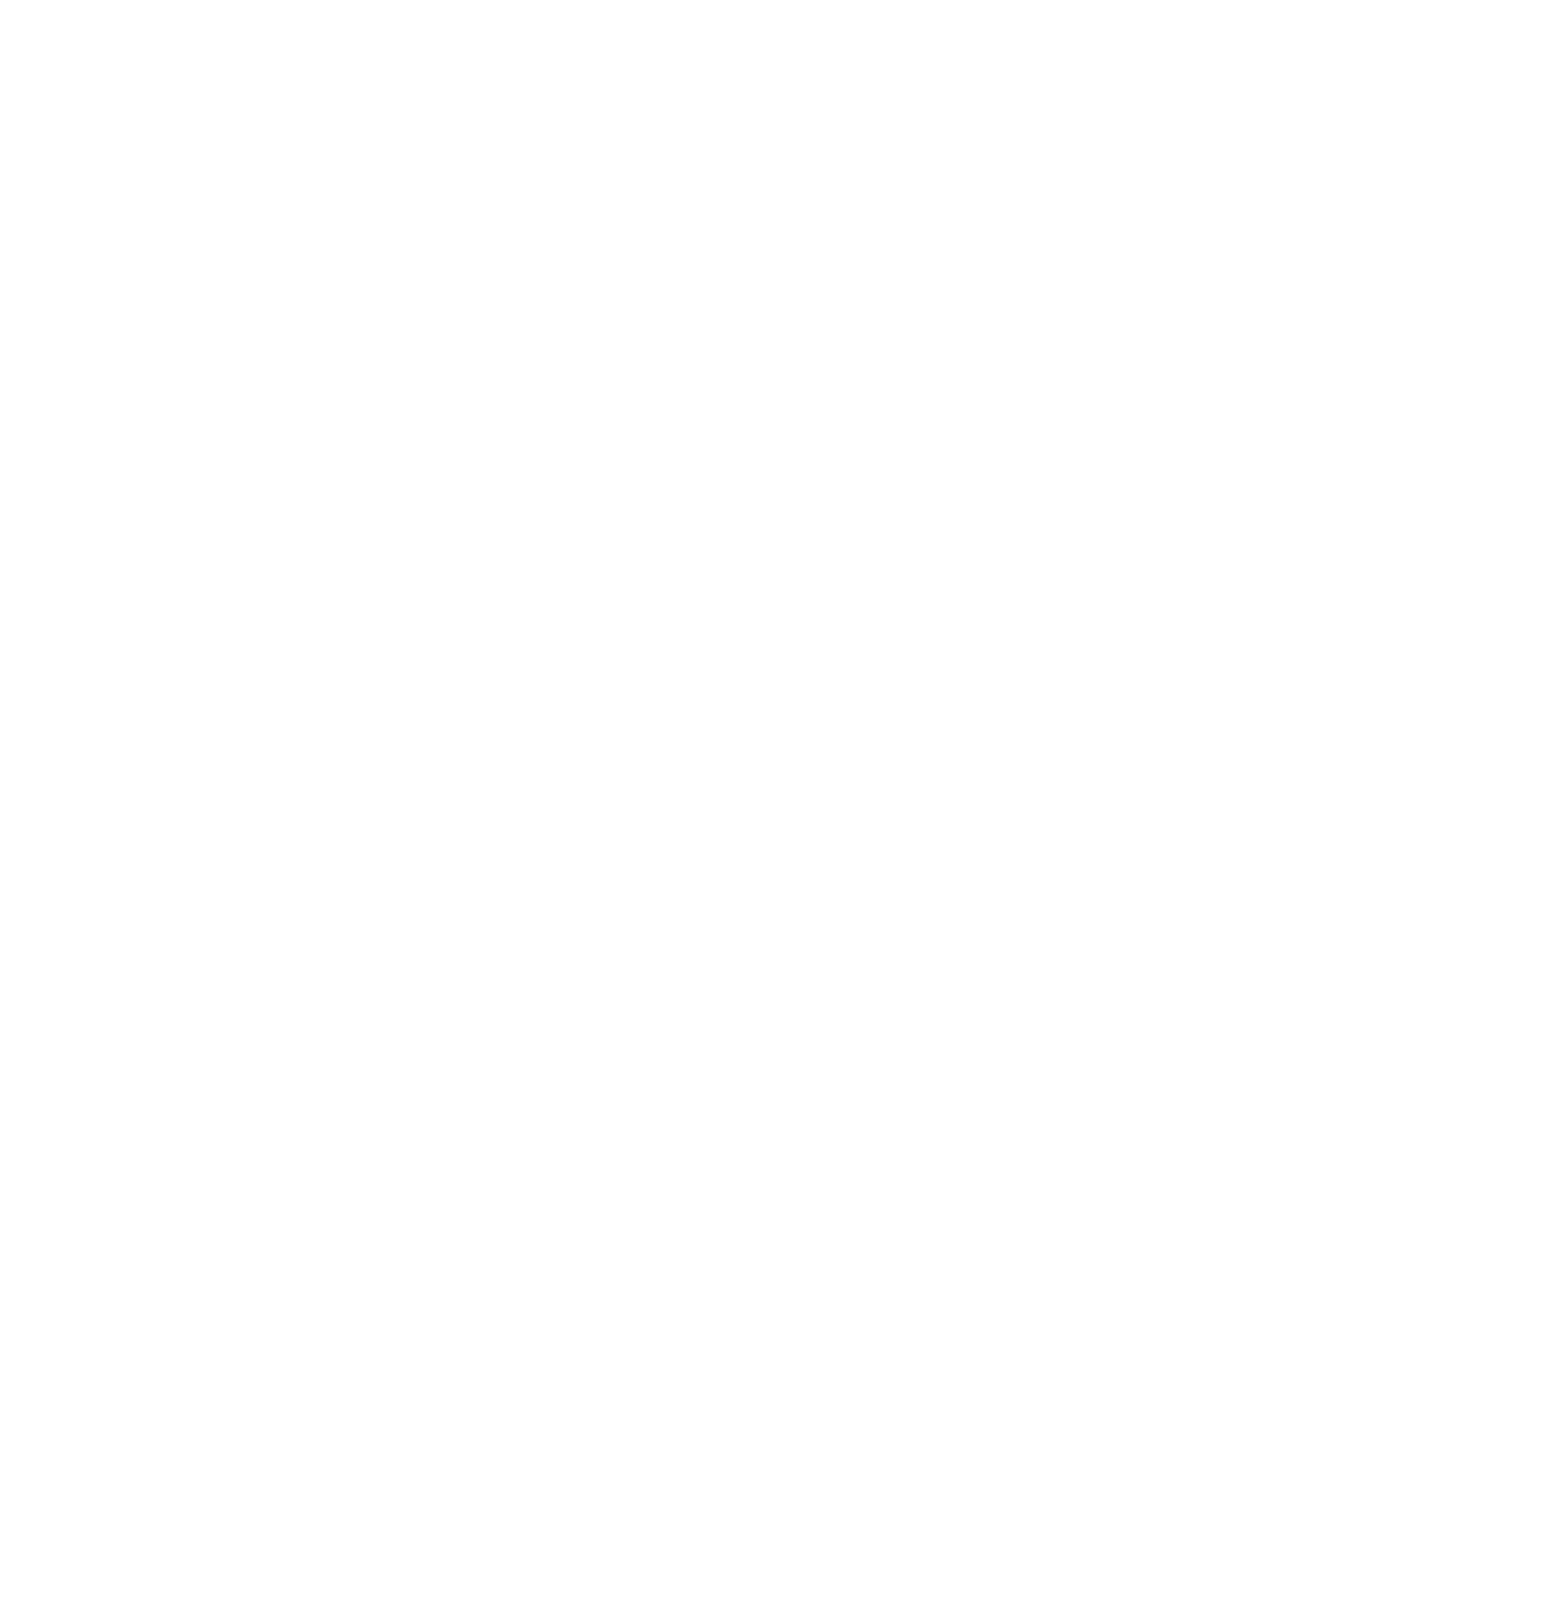 ASOS logo for dark backgrounds (transparent PNG)